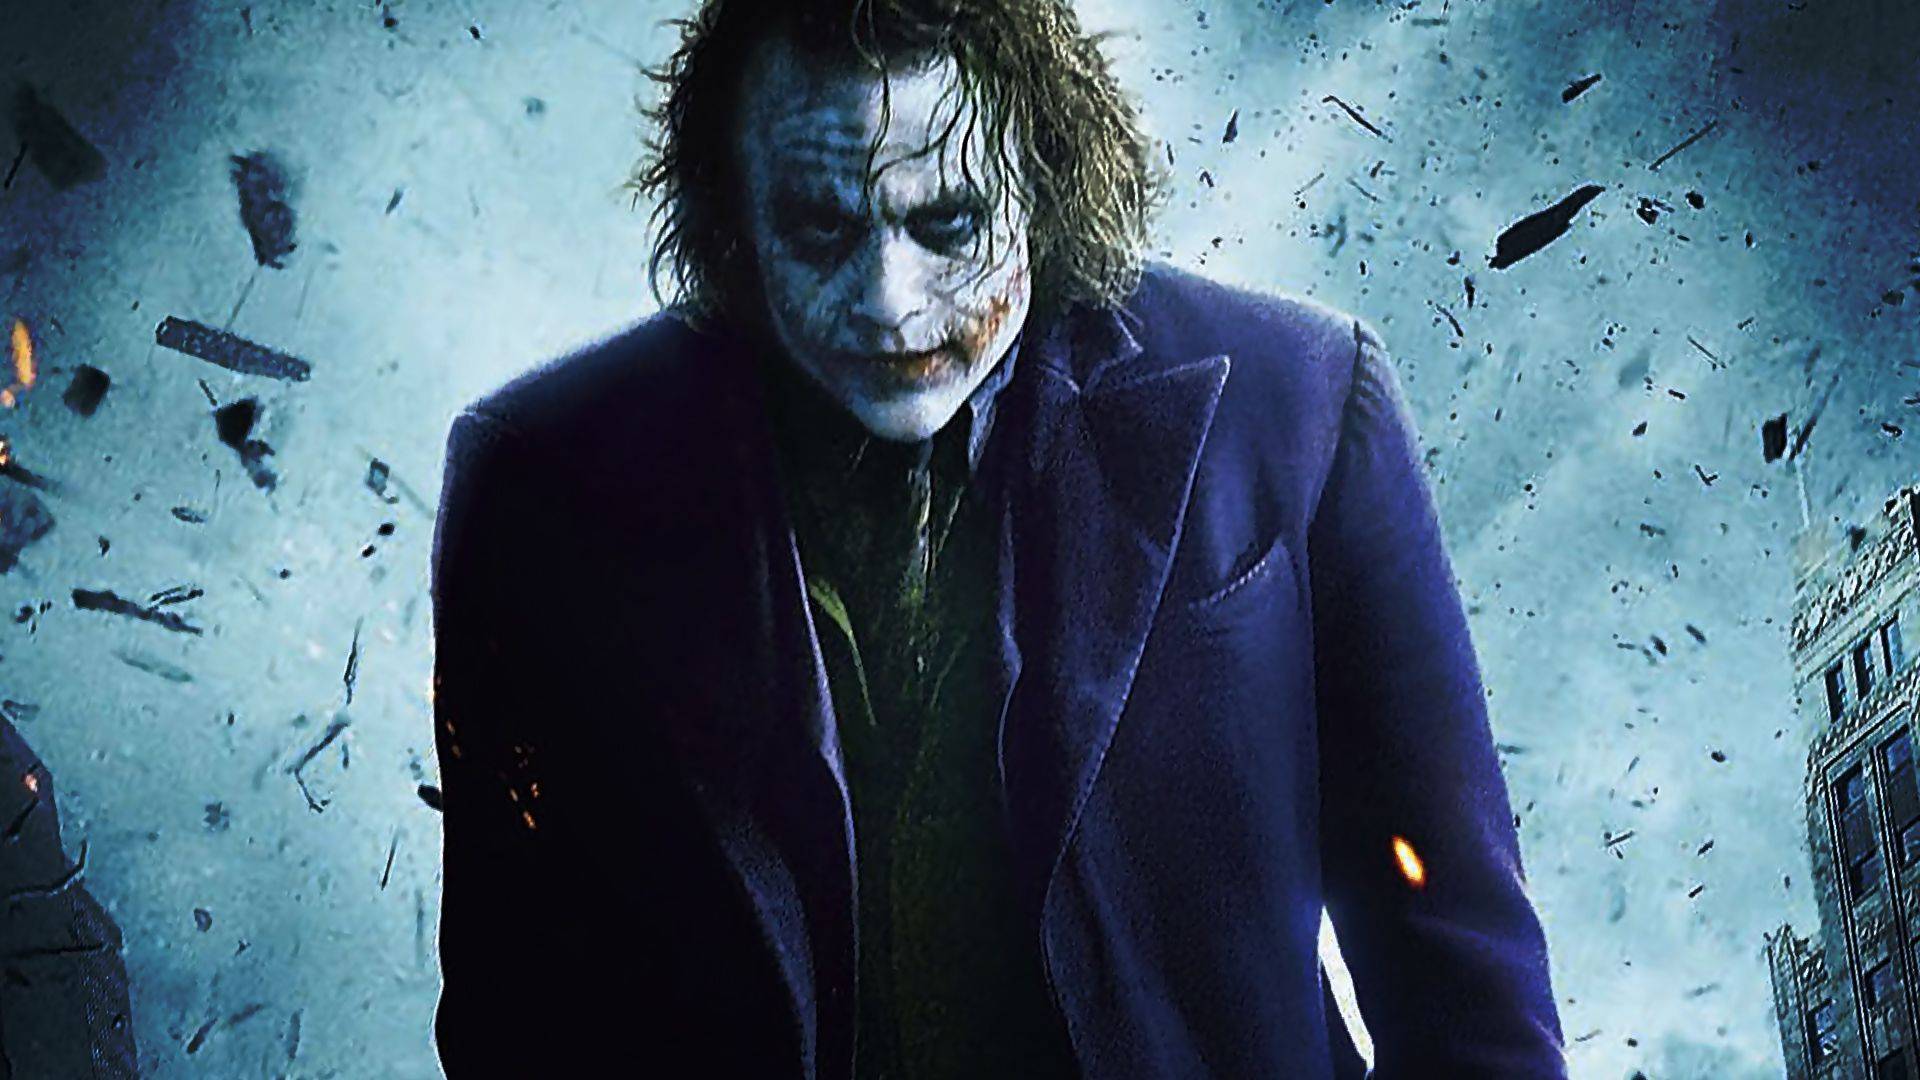 The Joker - Batman Wallpaper